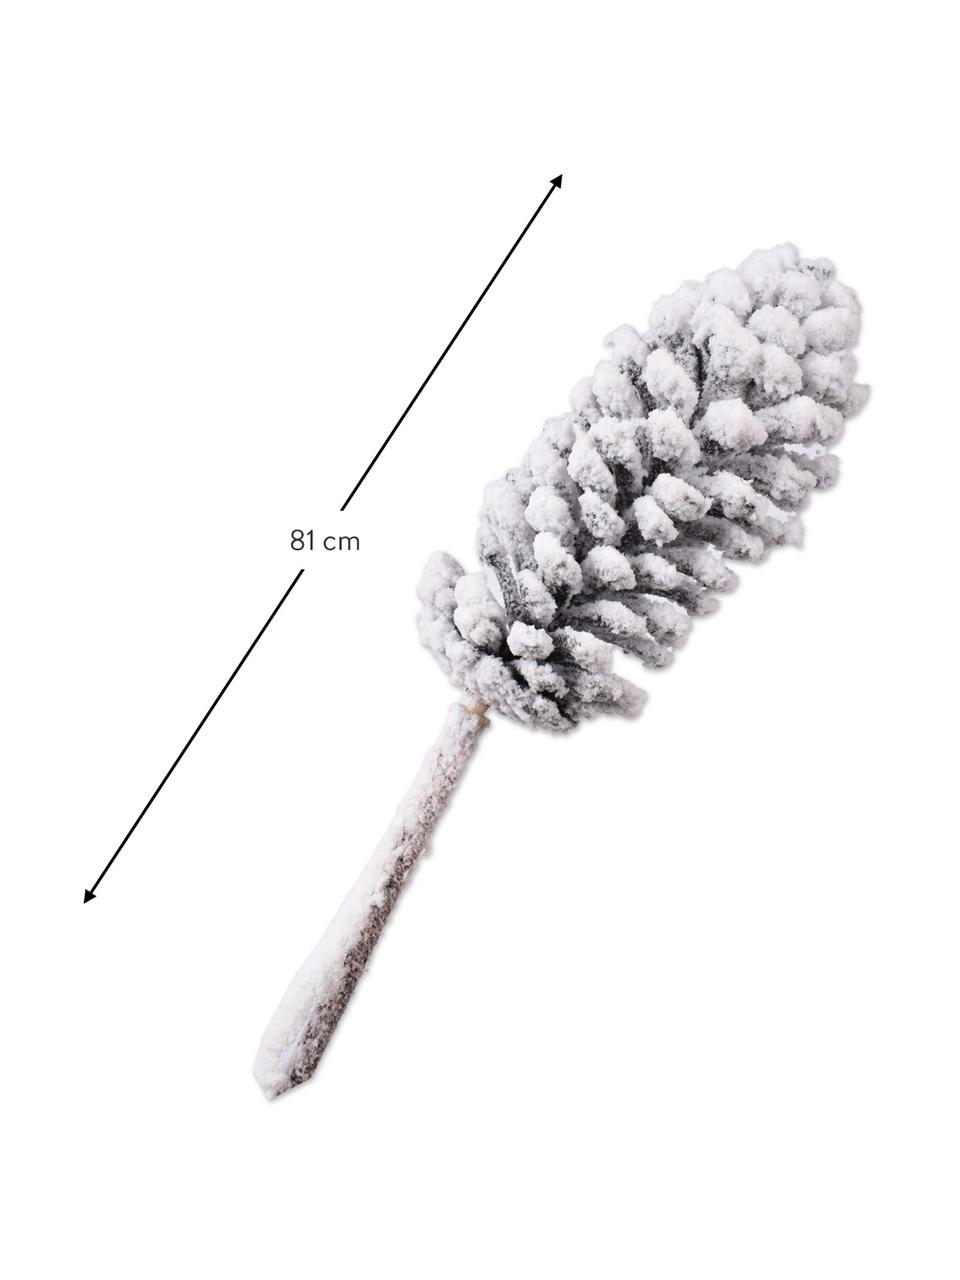 Umělé větve borovice s umělým sněhem, 2 ks, Umělá hmota, kovový drát, Bílá, D 81 cm